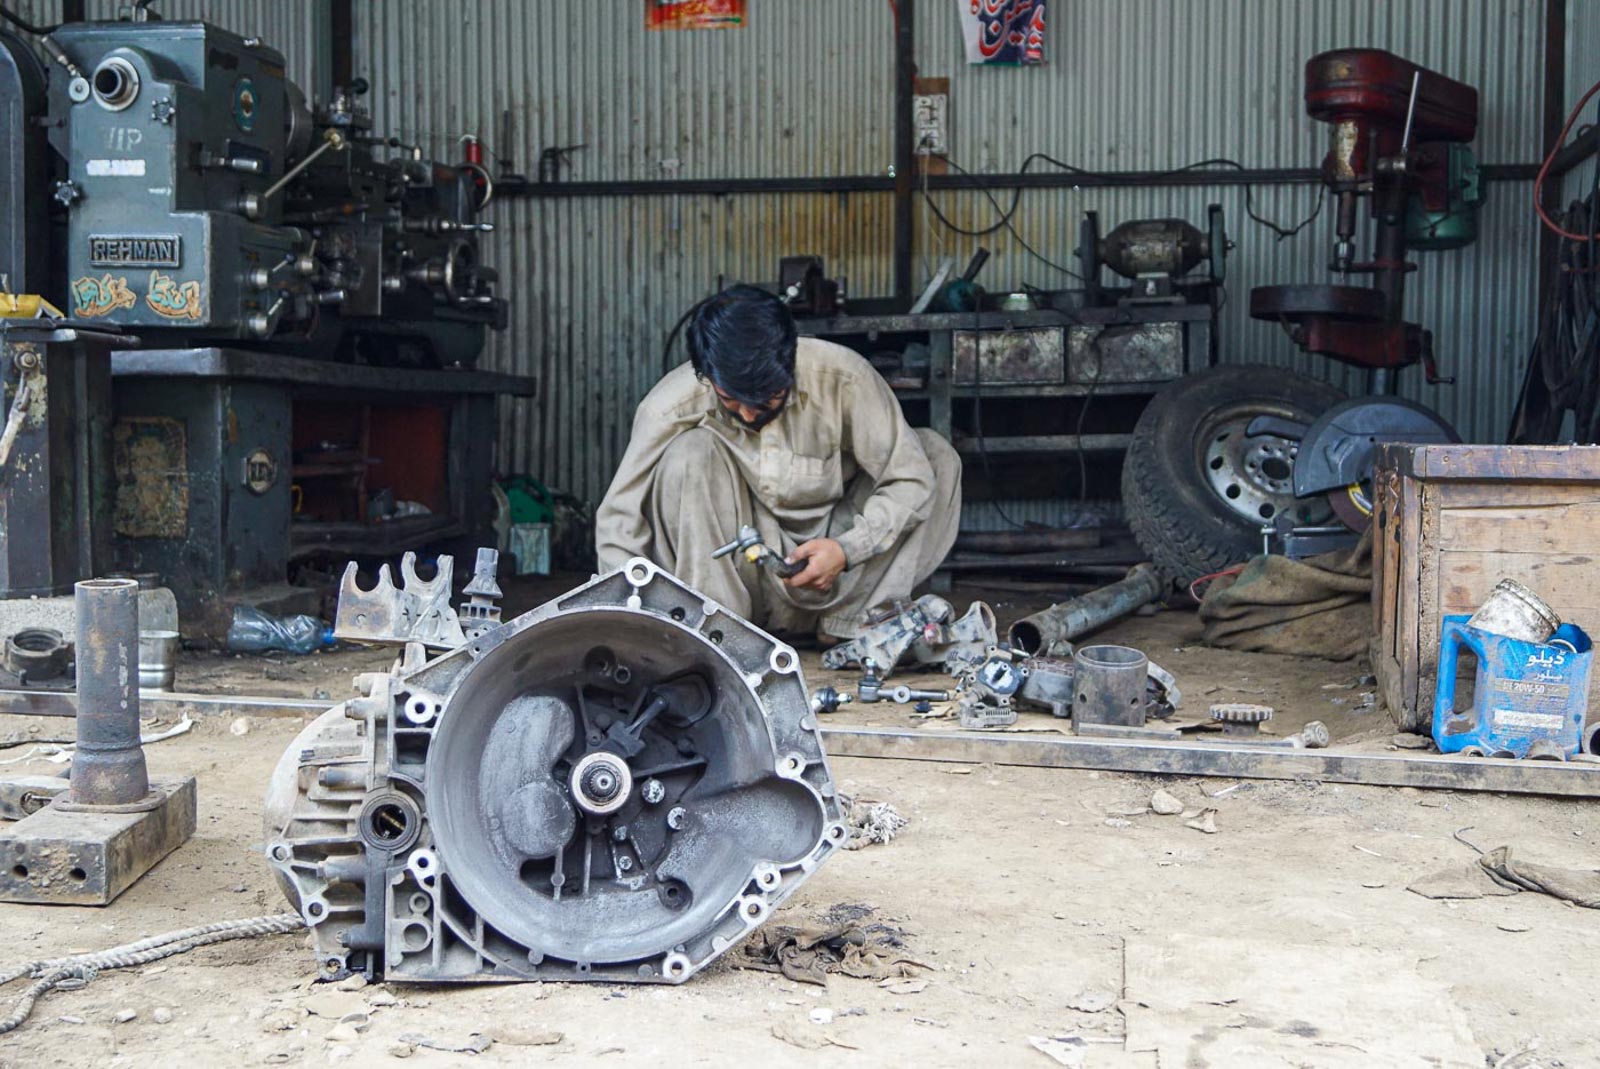 Pakistan in Naran, arbeitet ein Mechaniker am Getriebe. Man sitz in hockend in seiner kleinen Werkstatt. Er hat ein Beiges traditionelle Pakistanische Gewand an und schwarzes Haar